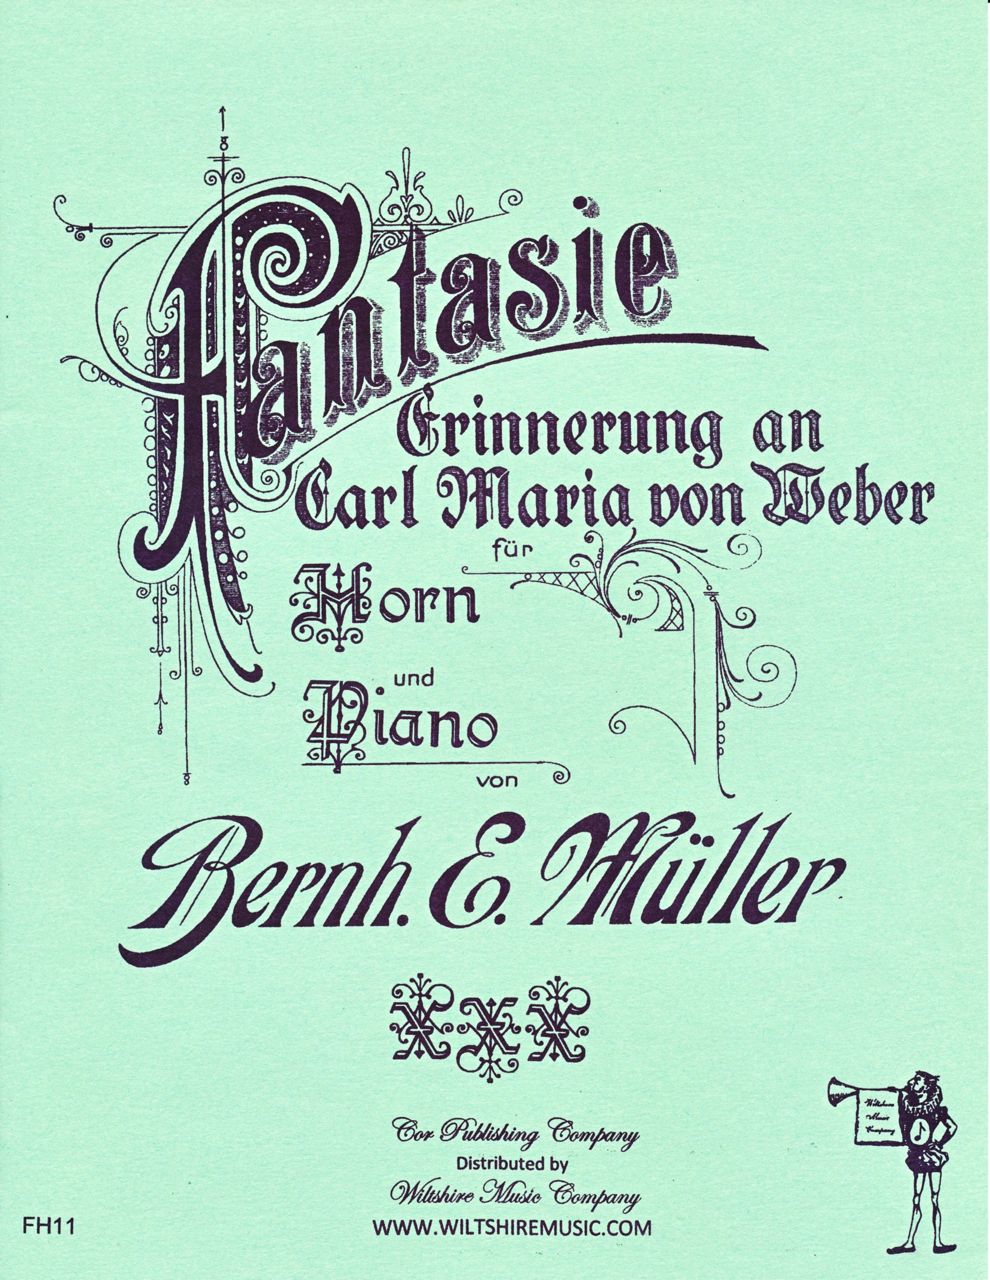 Fantasie for Horn & Piano, Bernhardt Muller